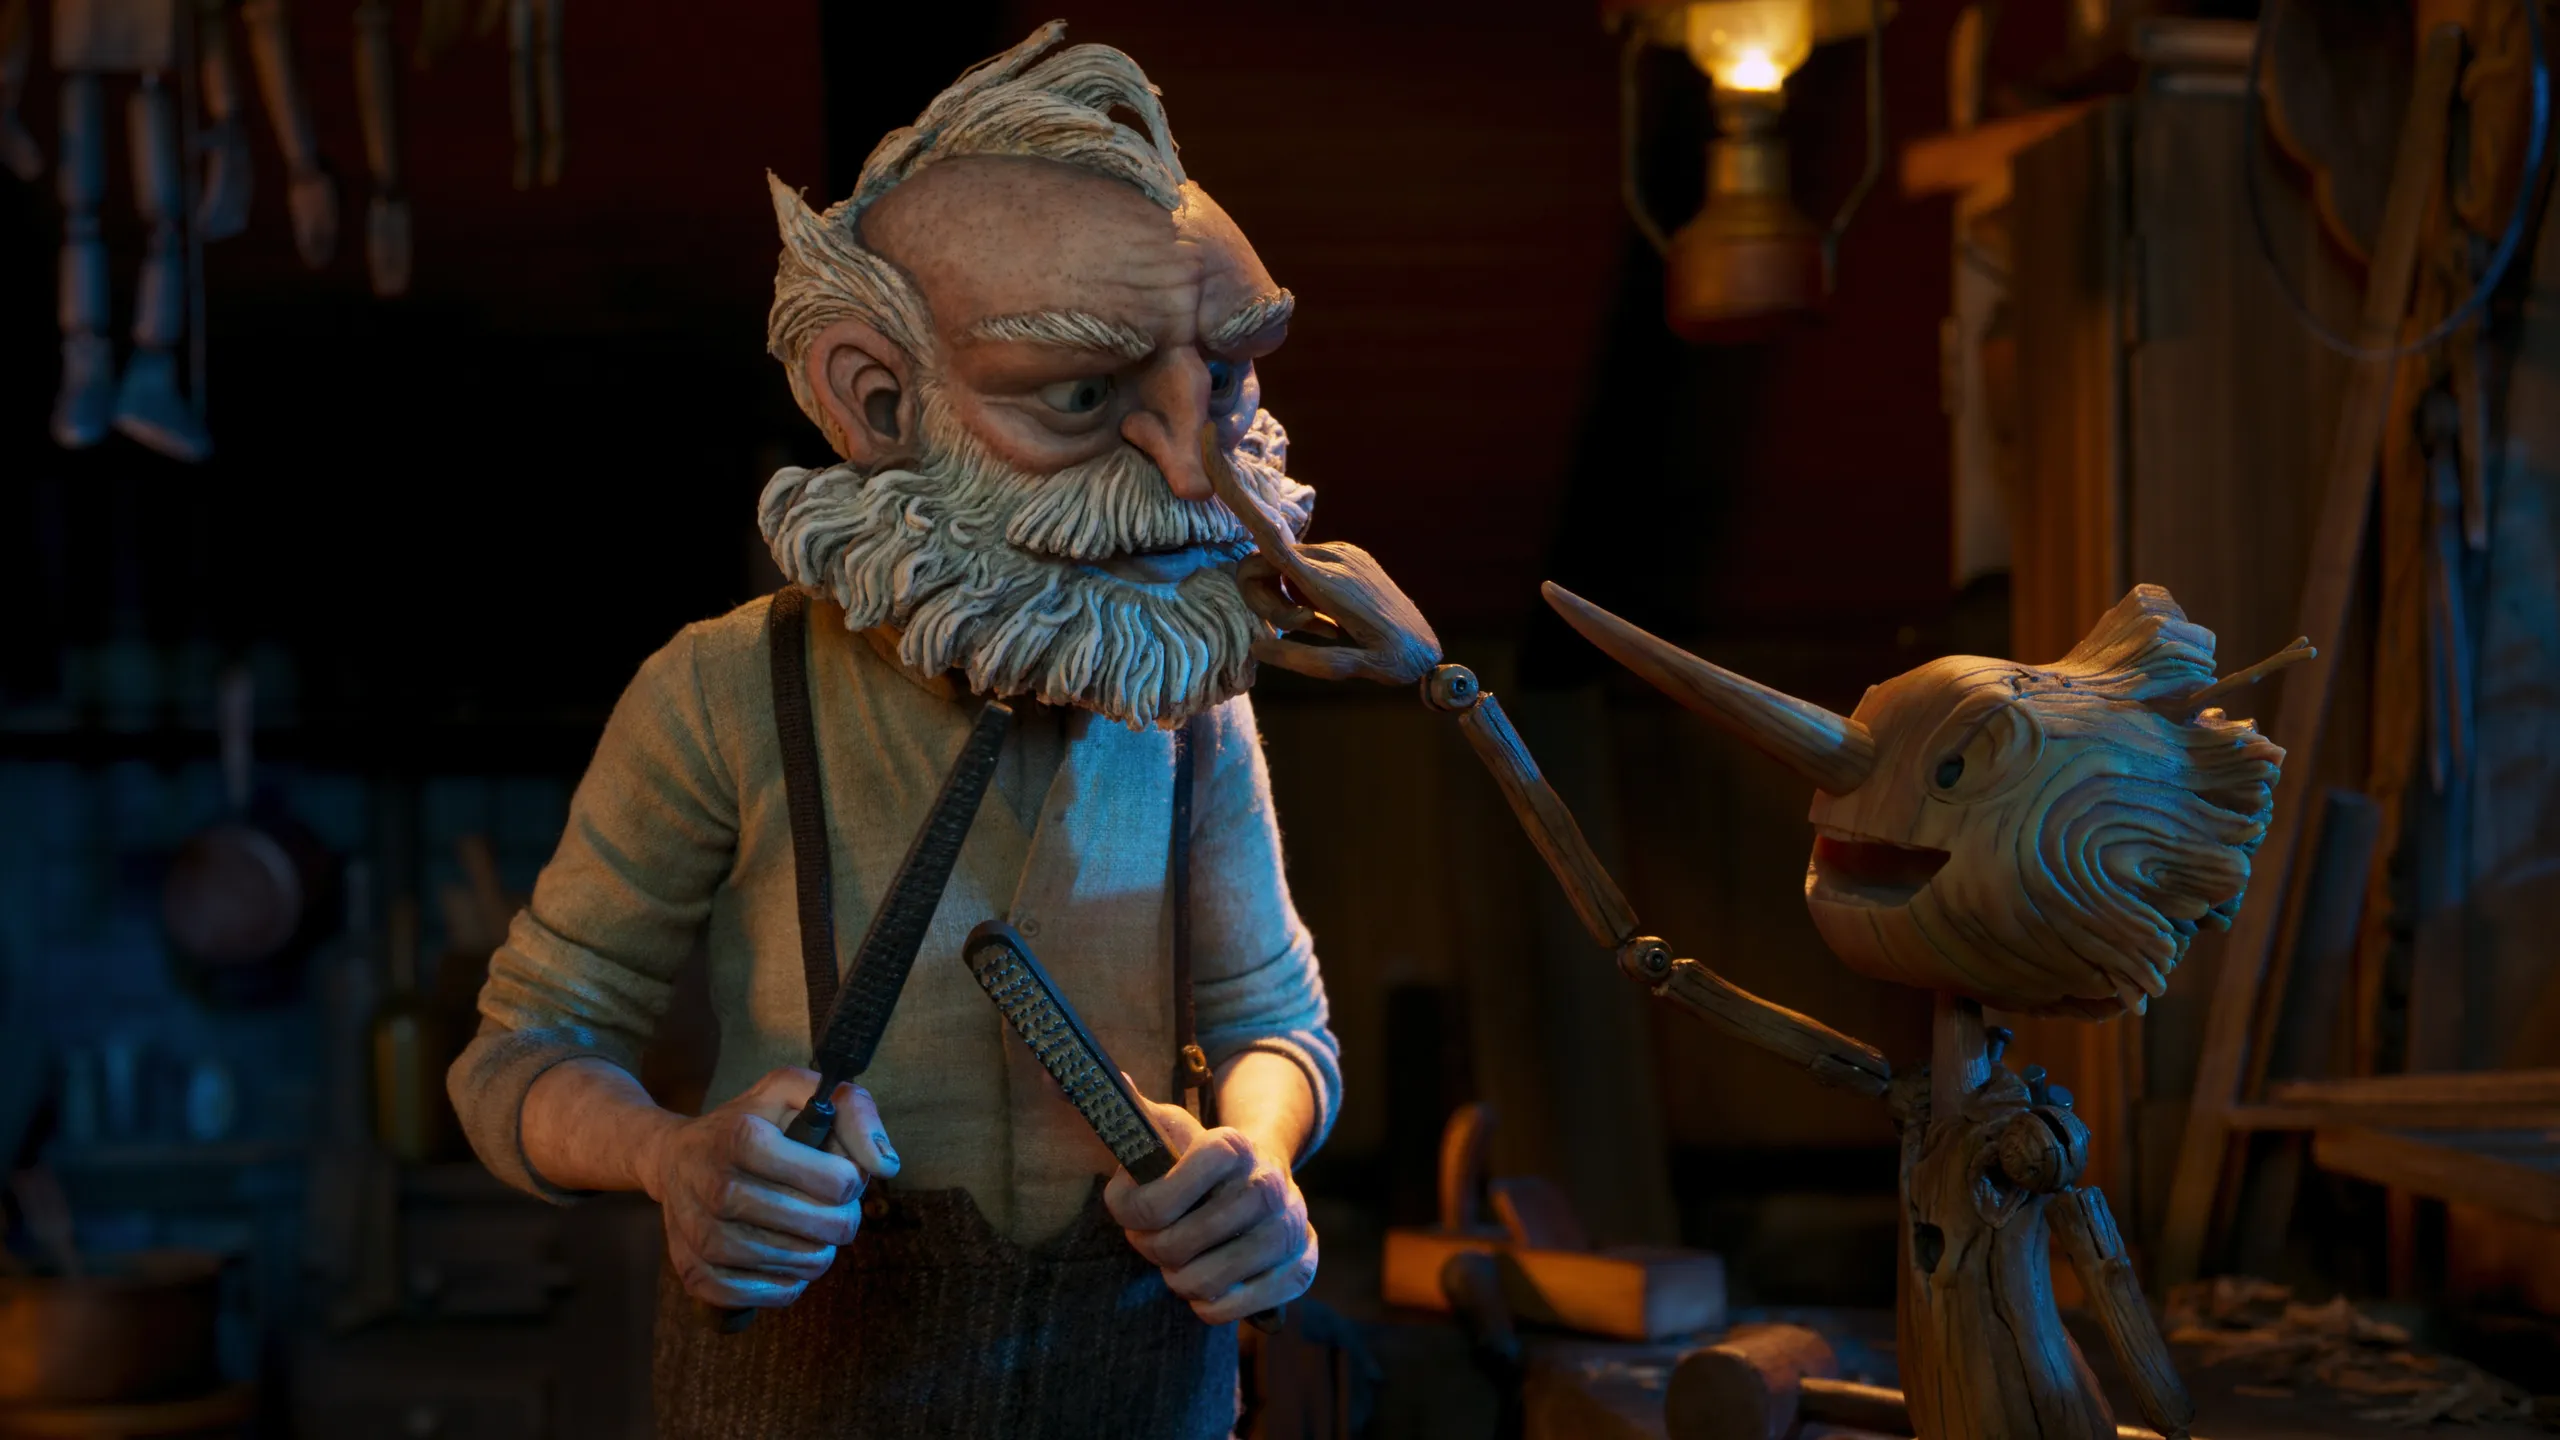 Pinocchio di Guillermo del Toro recensione